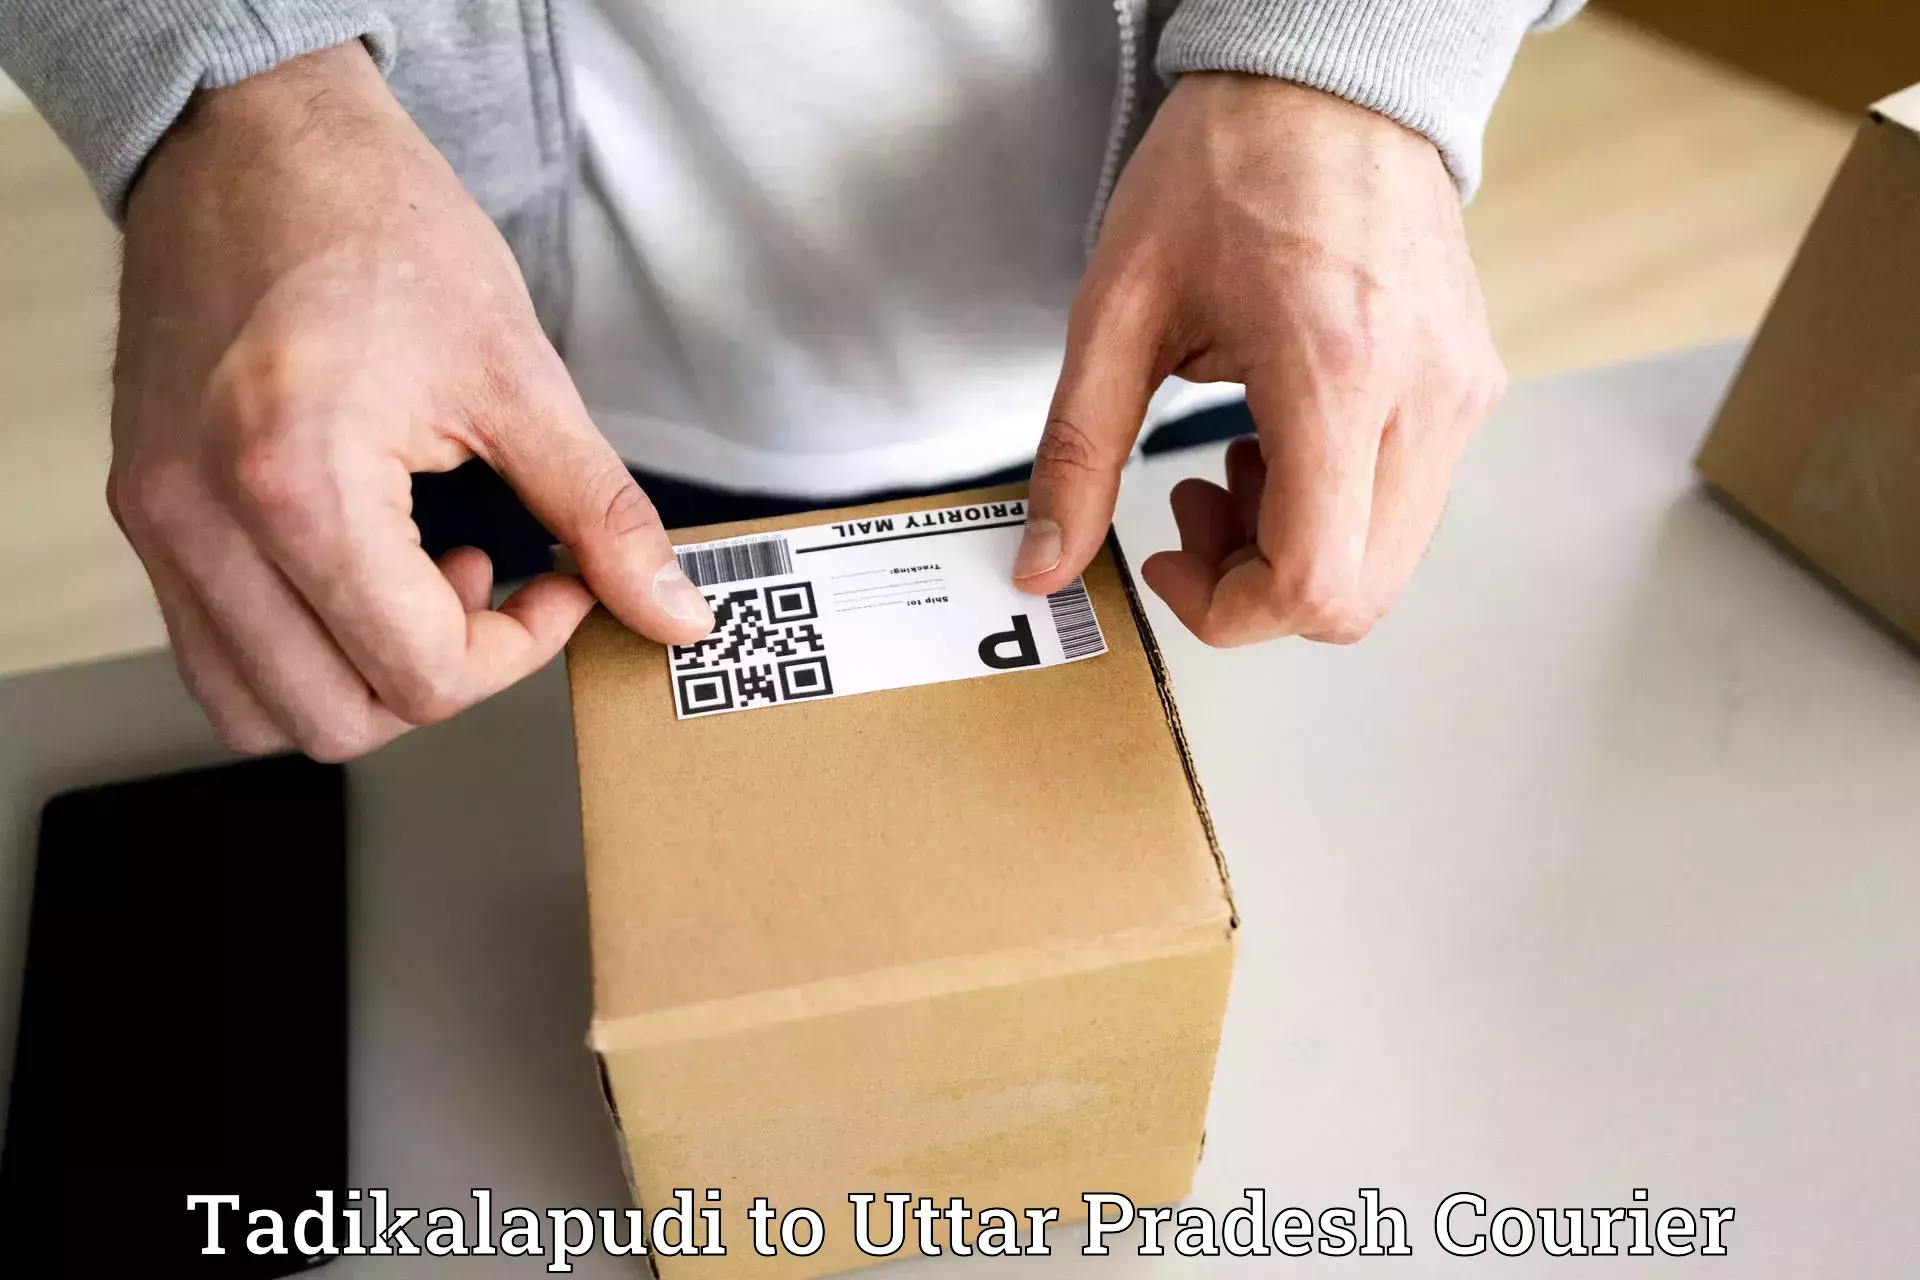 Reliable courier service Tadikalapudi to Uttar Pradesh